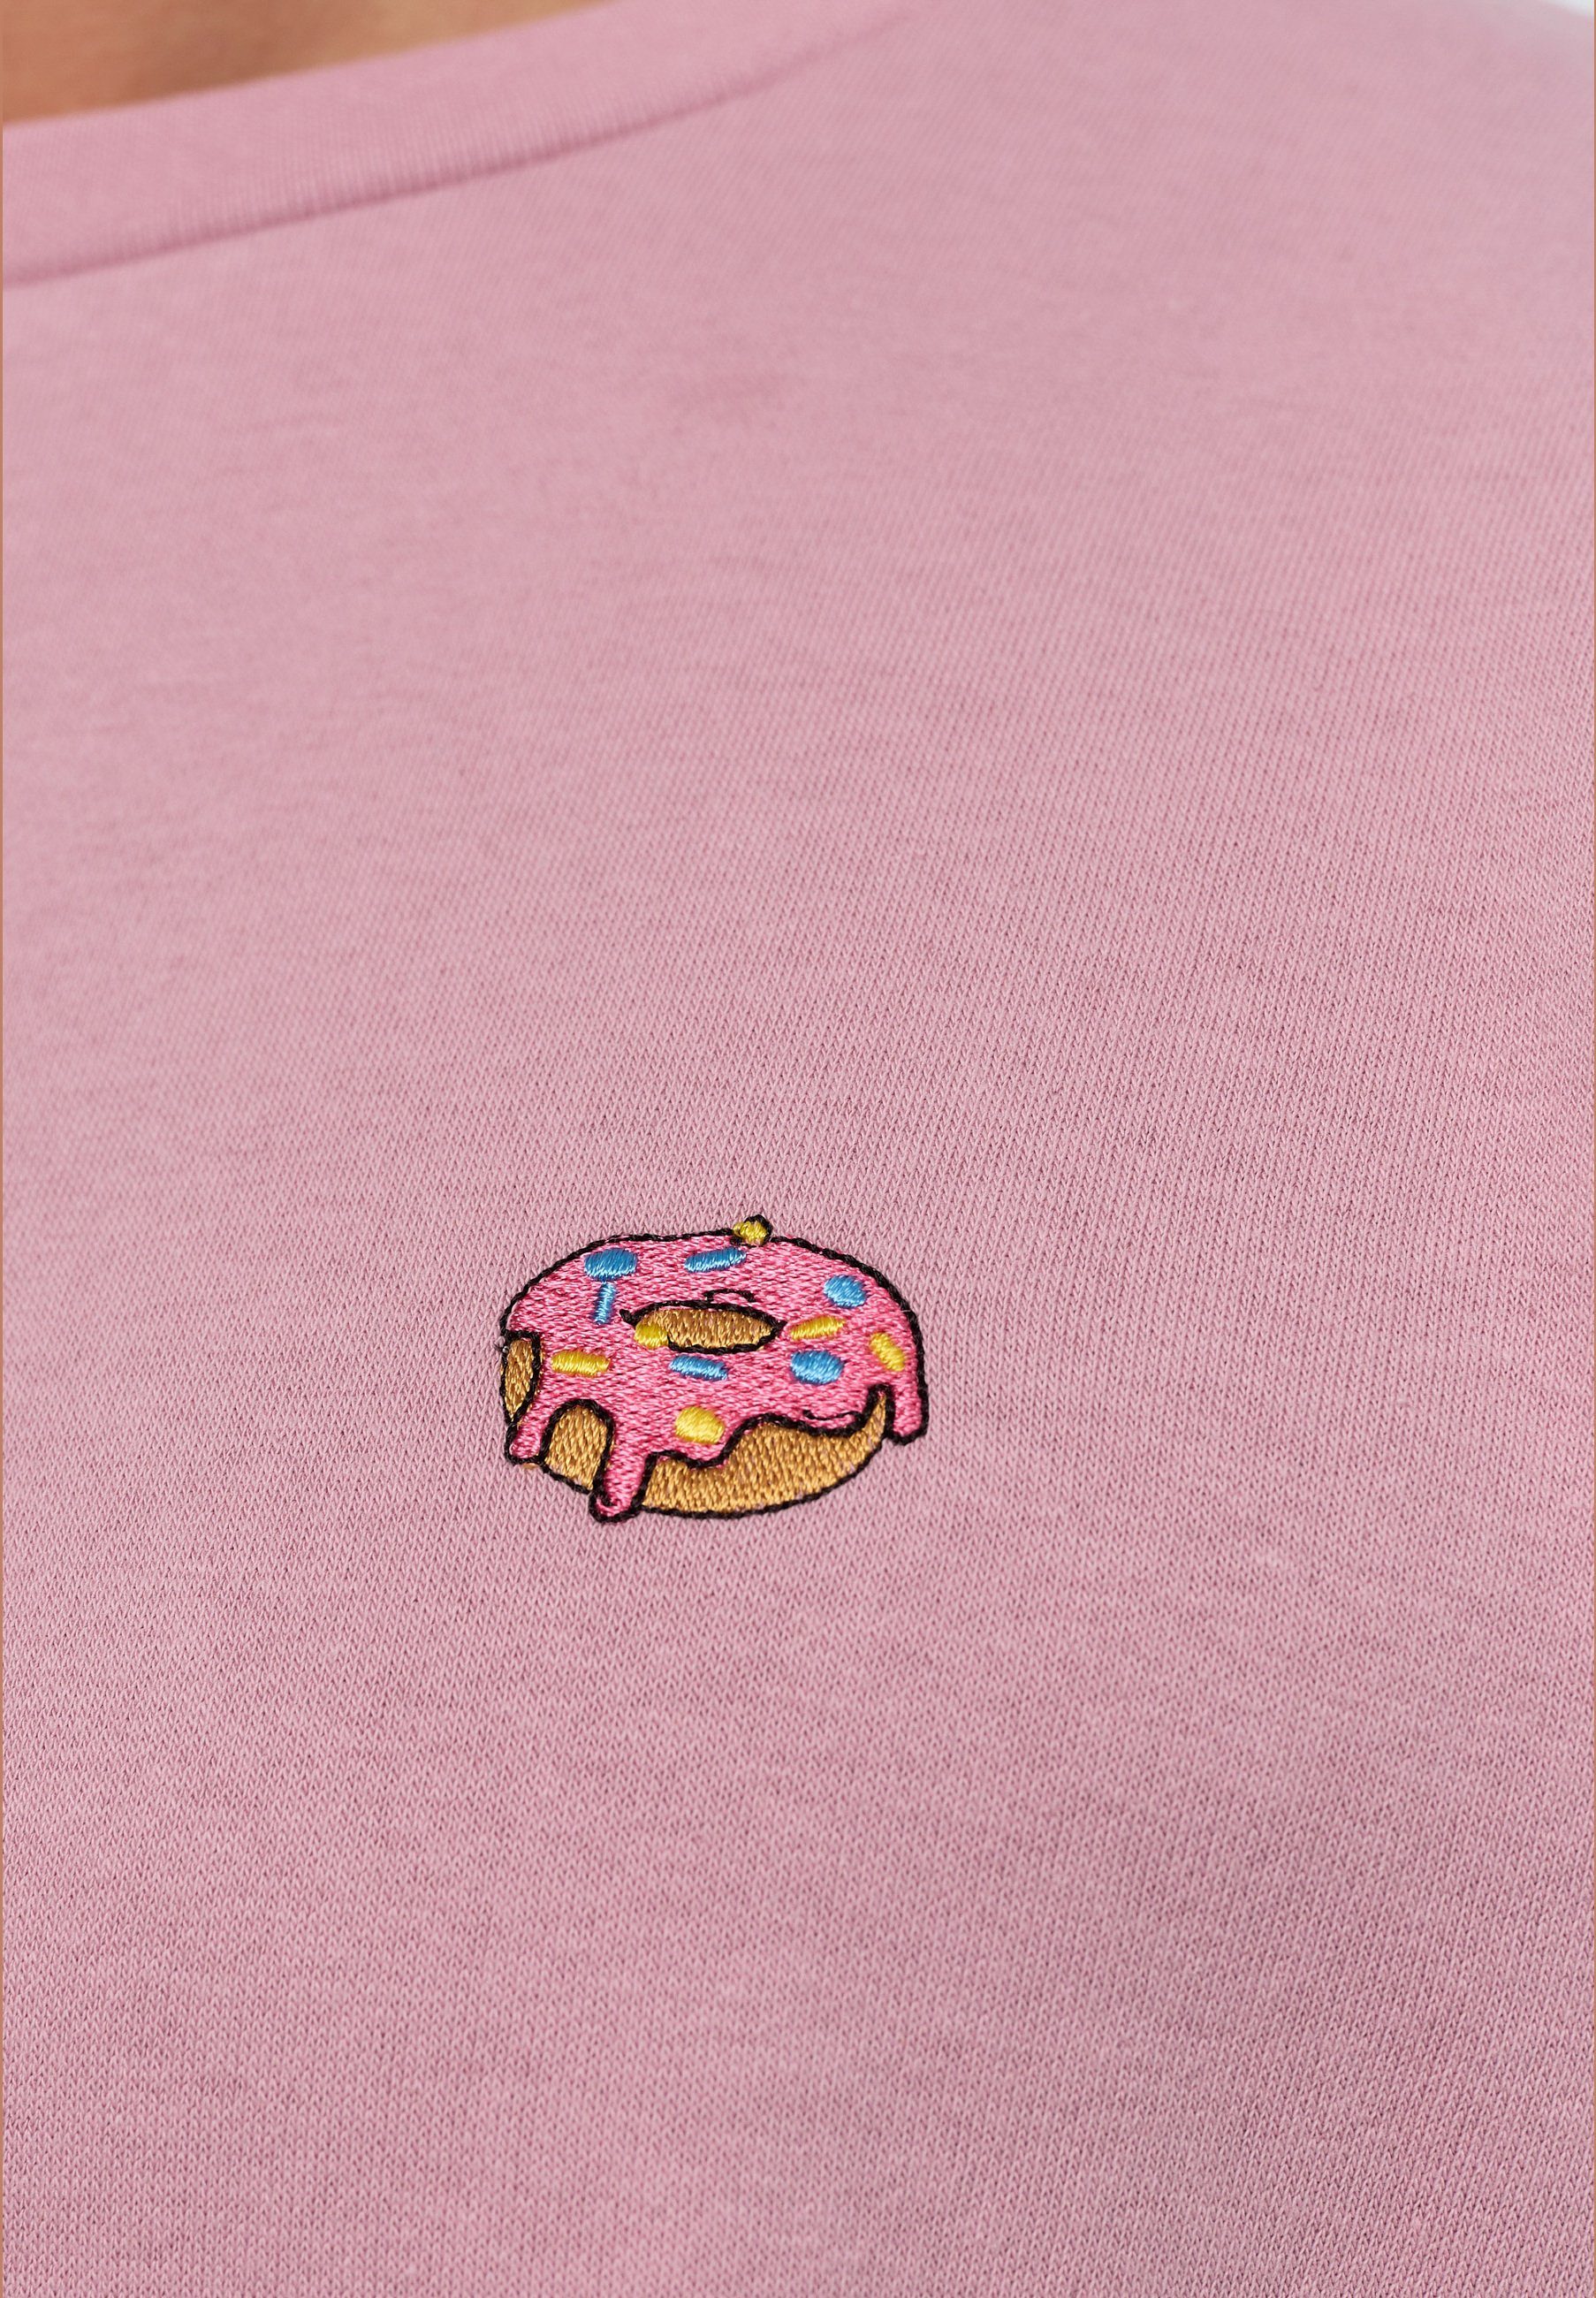 zertifizierte Bio-Baumwolle GOTS MIKON Pink Sweatshirt Donut